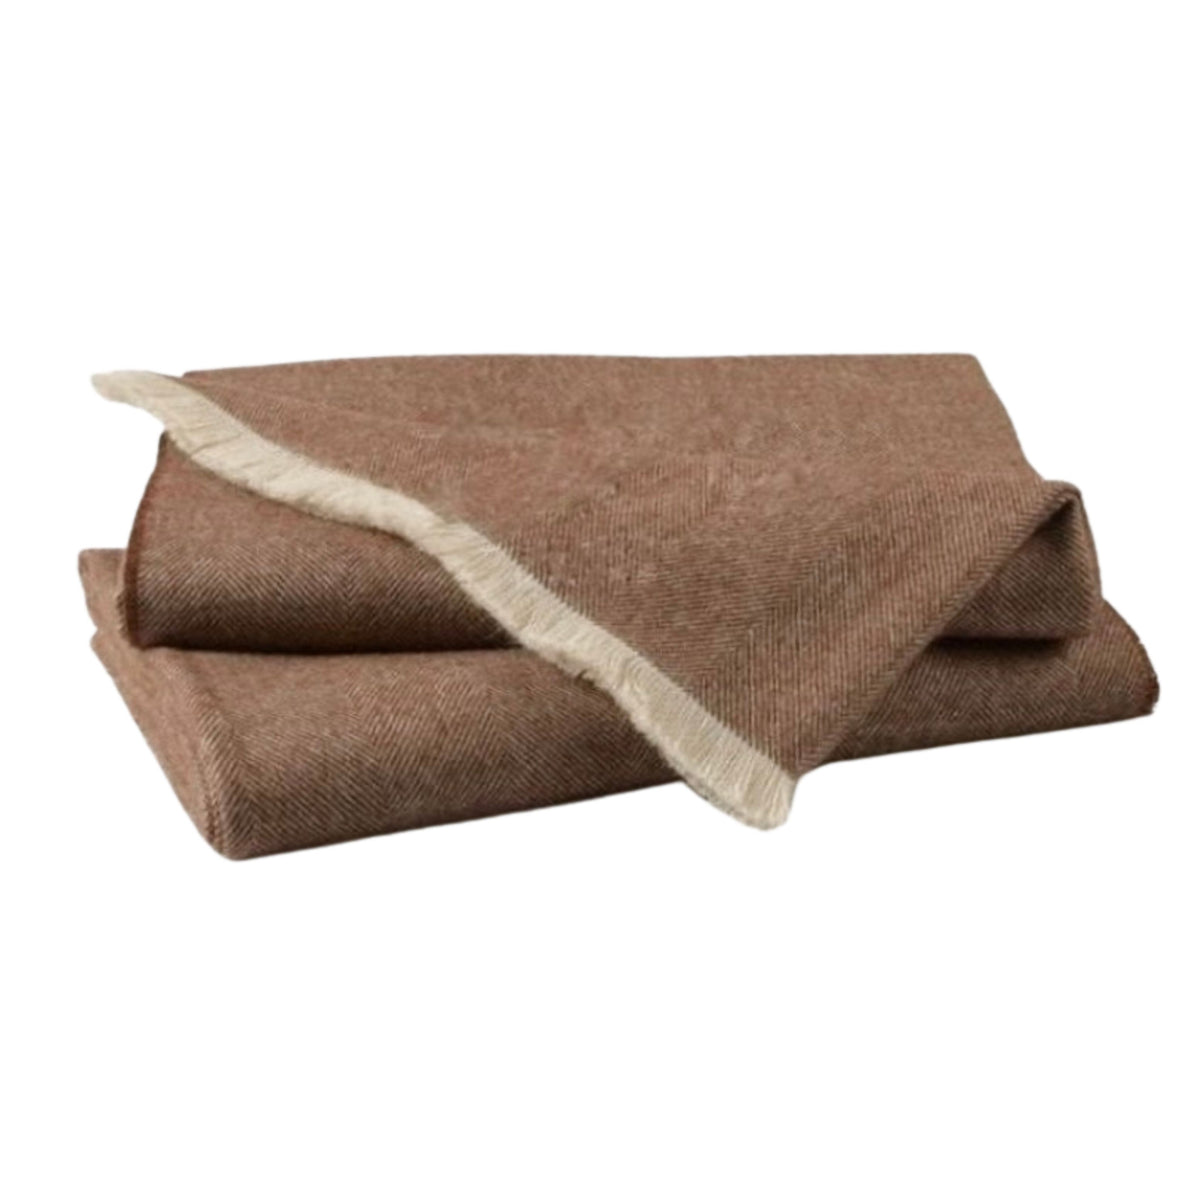 cocoa brown herringbone alpaca blanket soft